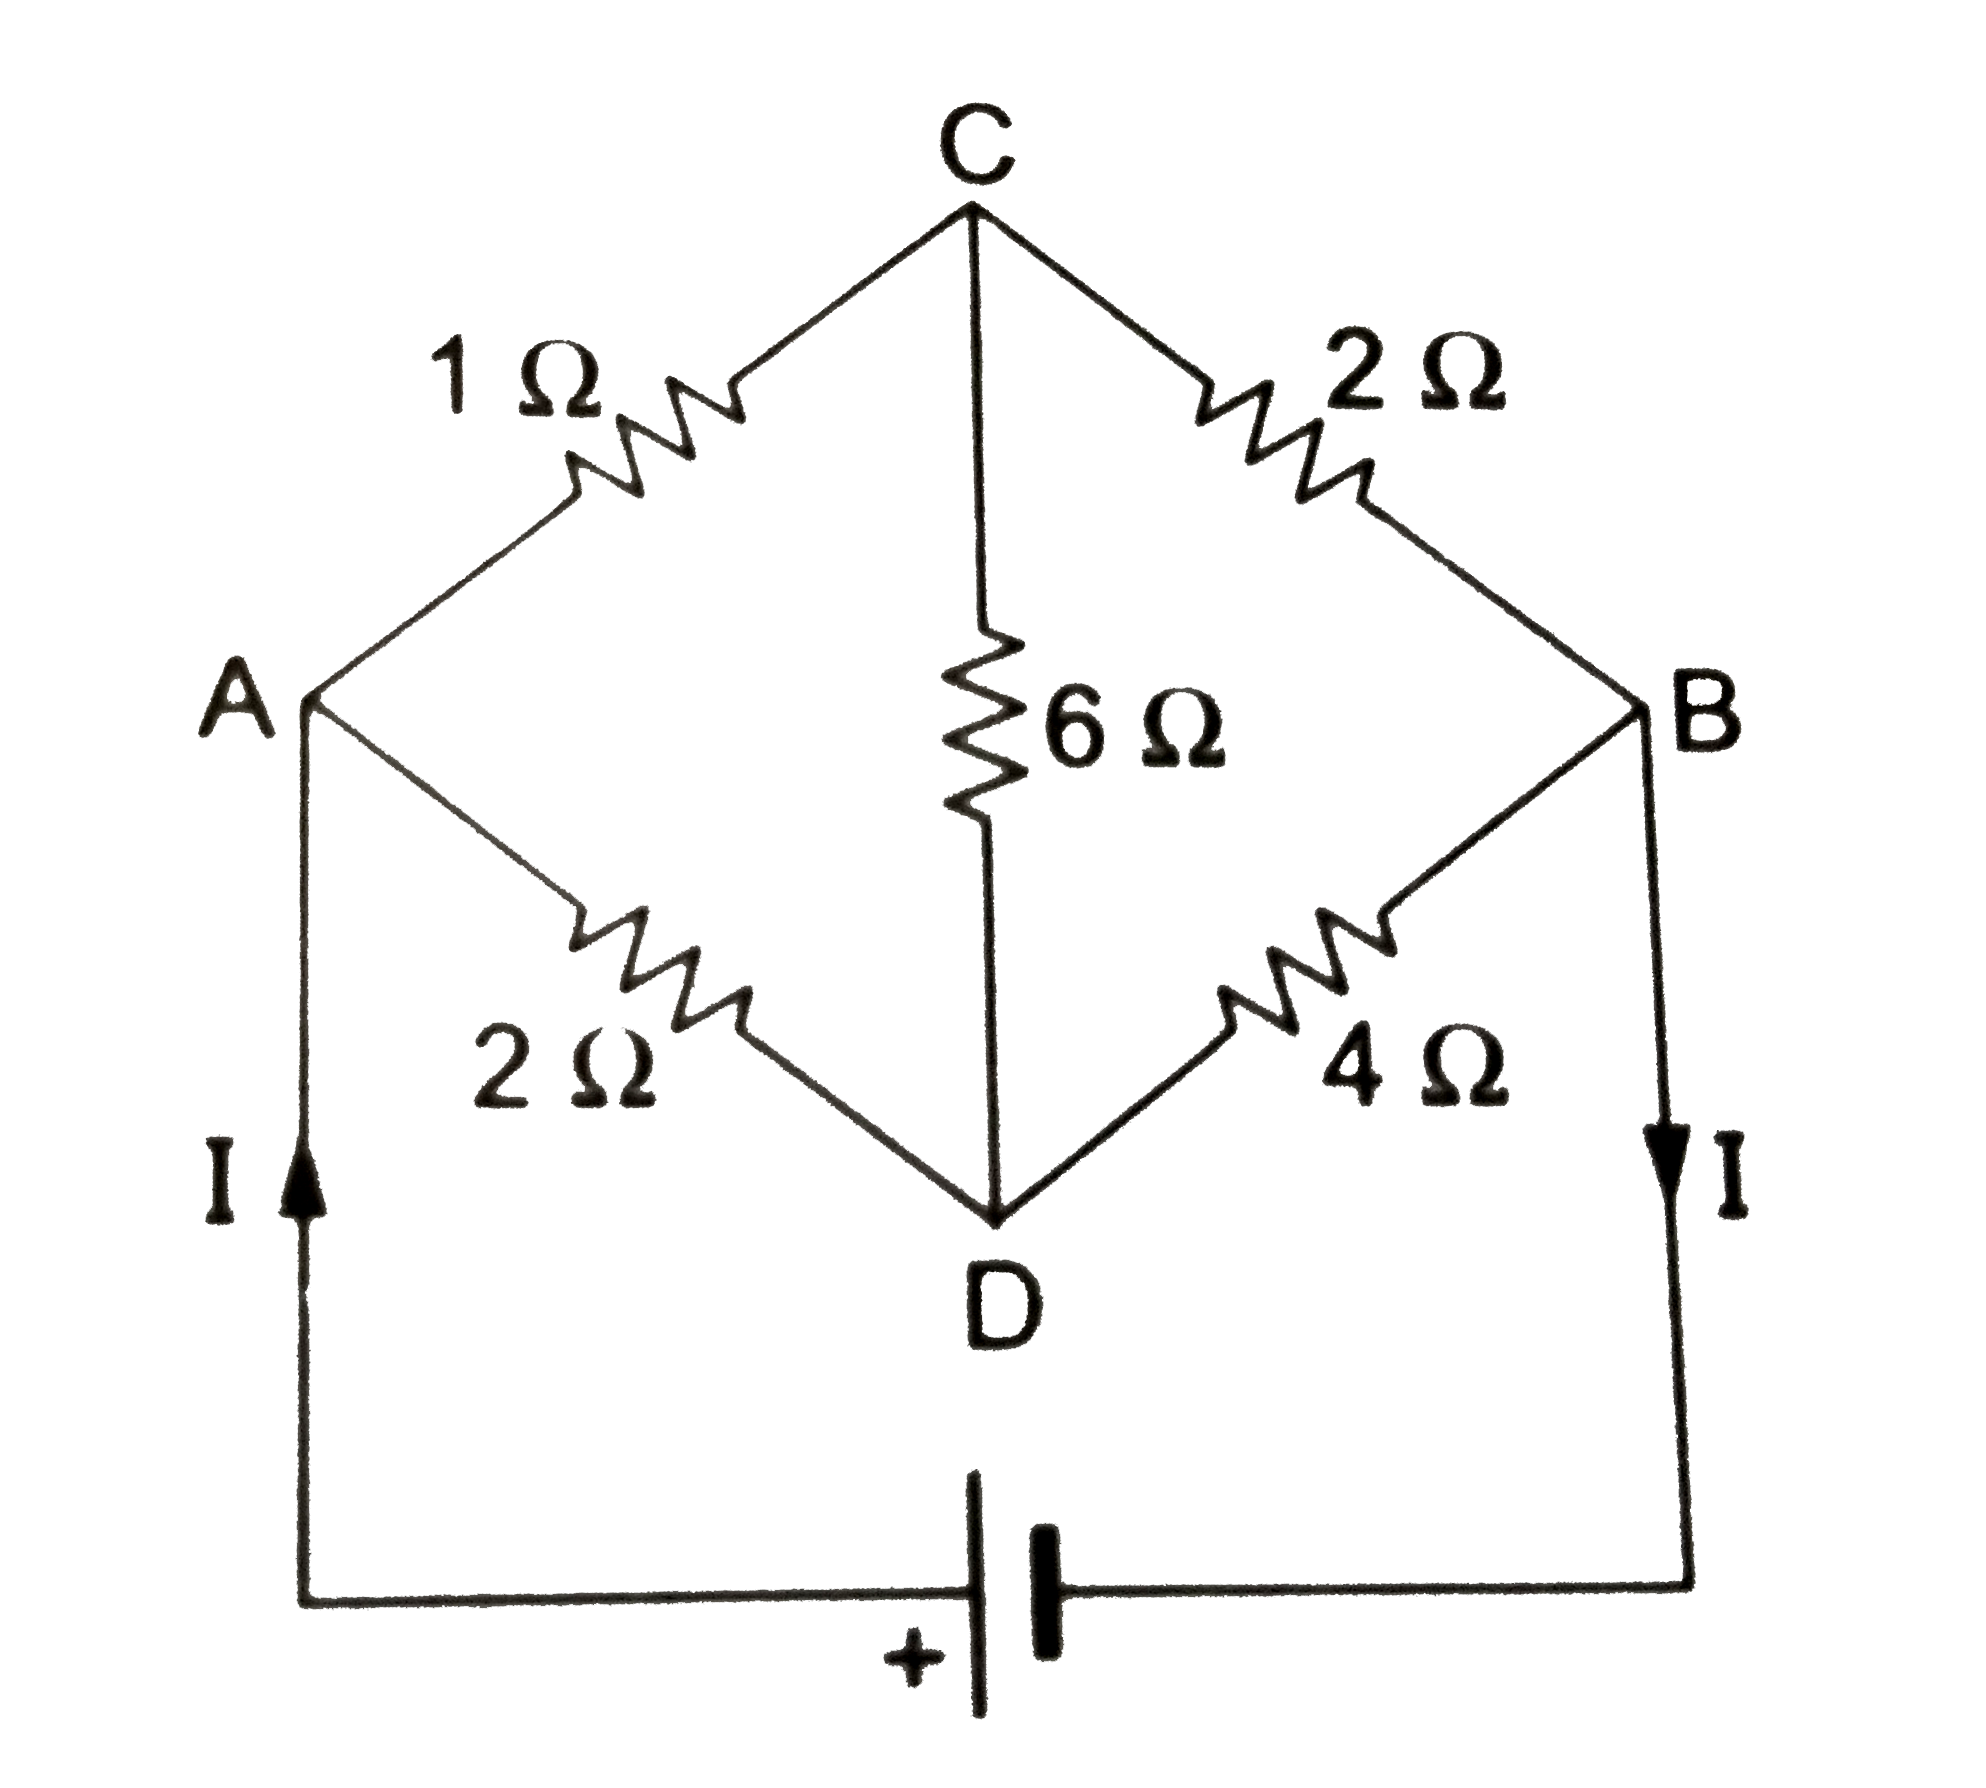 प्रदर्शित परिपथ का प्रवाहित मुख्य धरा I बिंदु A से प्रवेश करती है तथा बिंदु B से बहार आती है